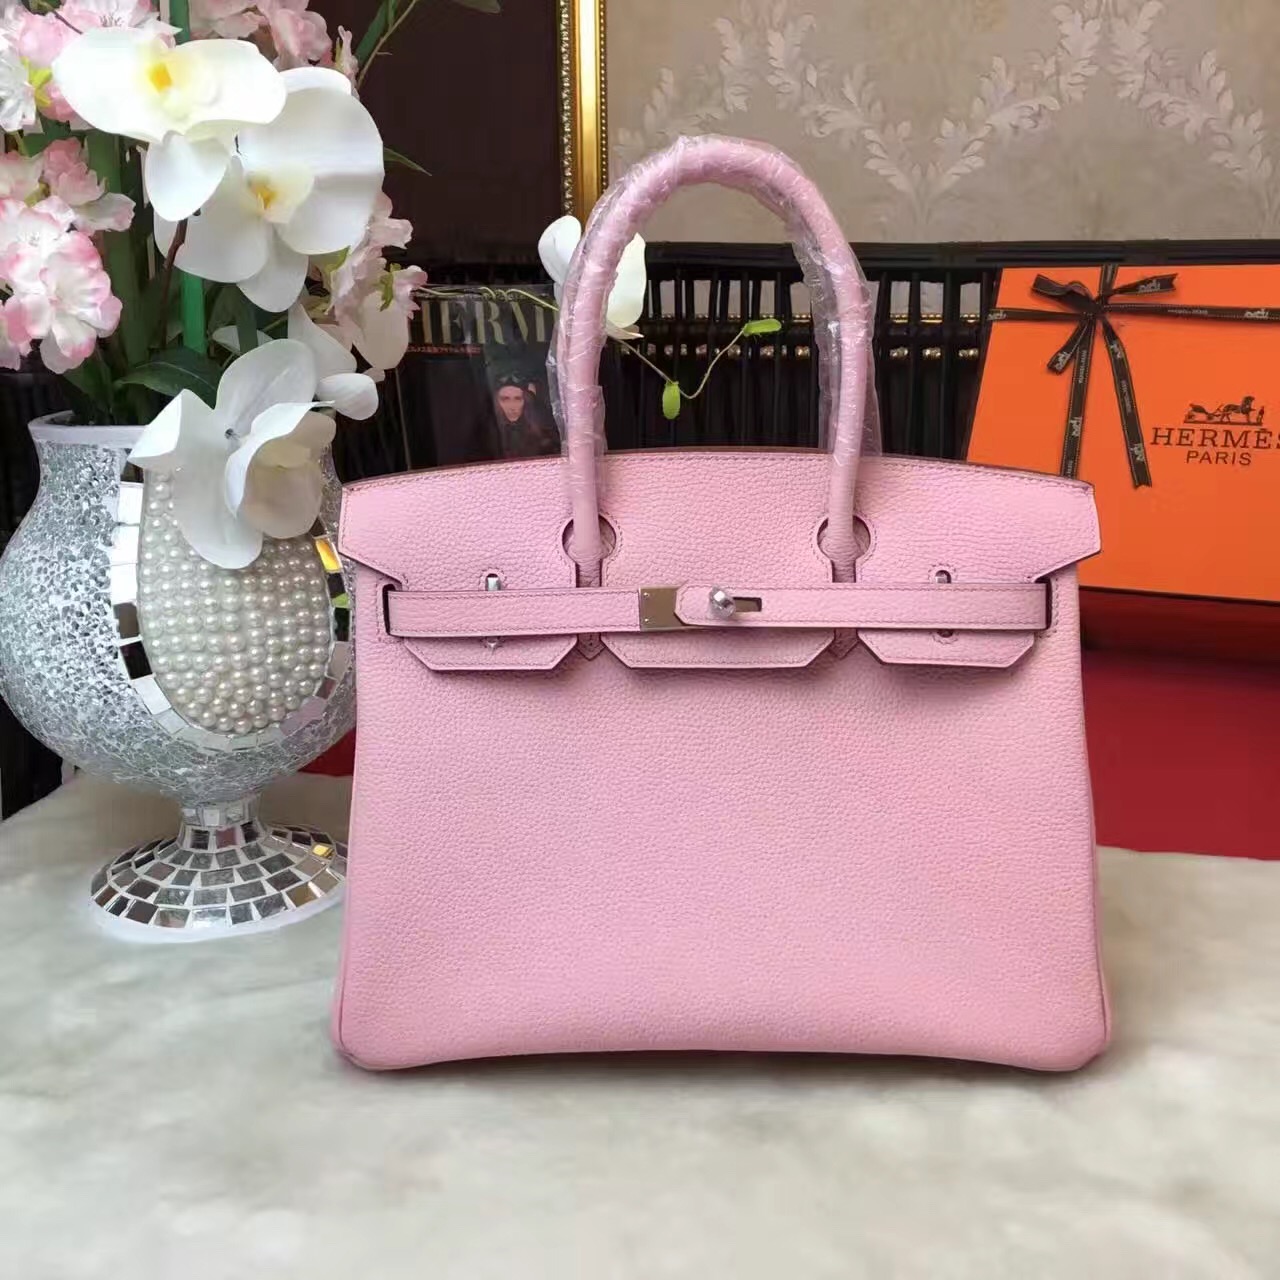 Hermes top leather pink Birkin handbags